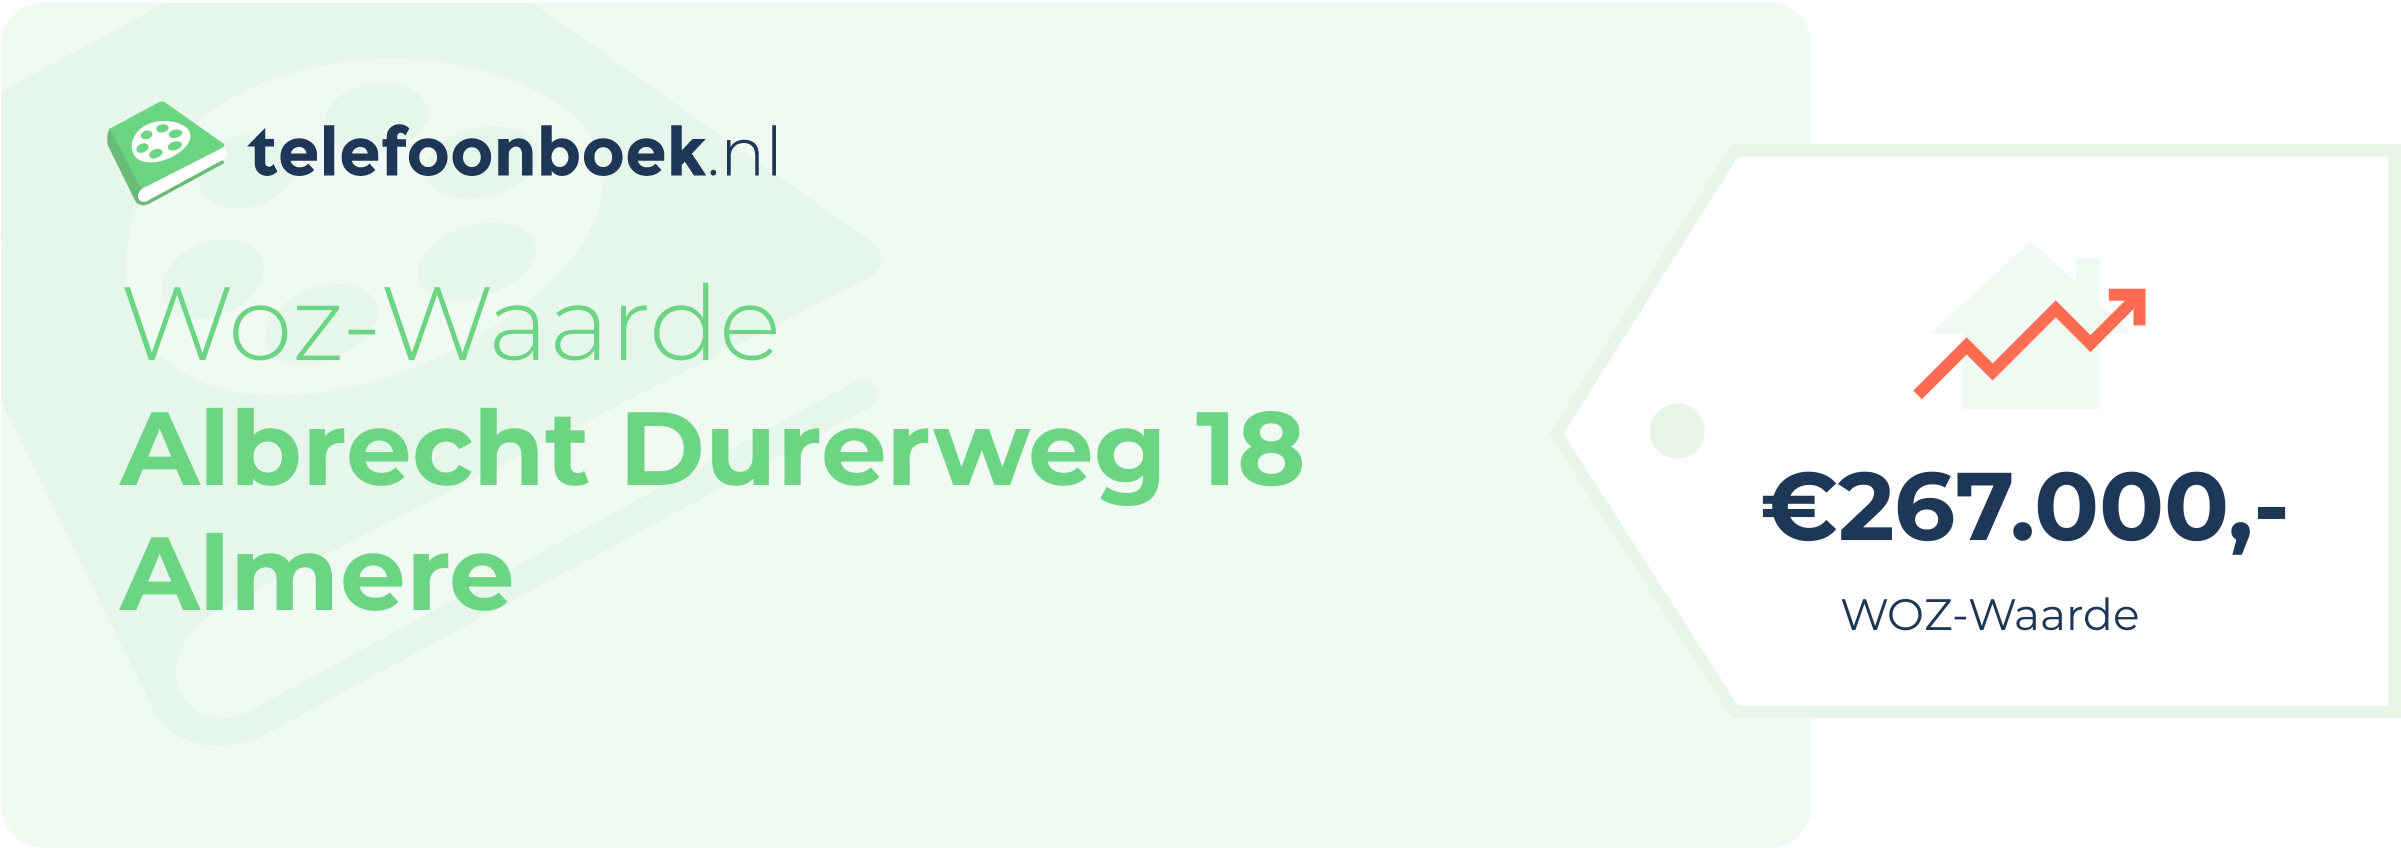 WOZ-waarde Albrecht Durerweg 18 Almere